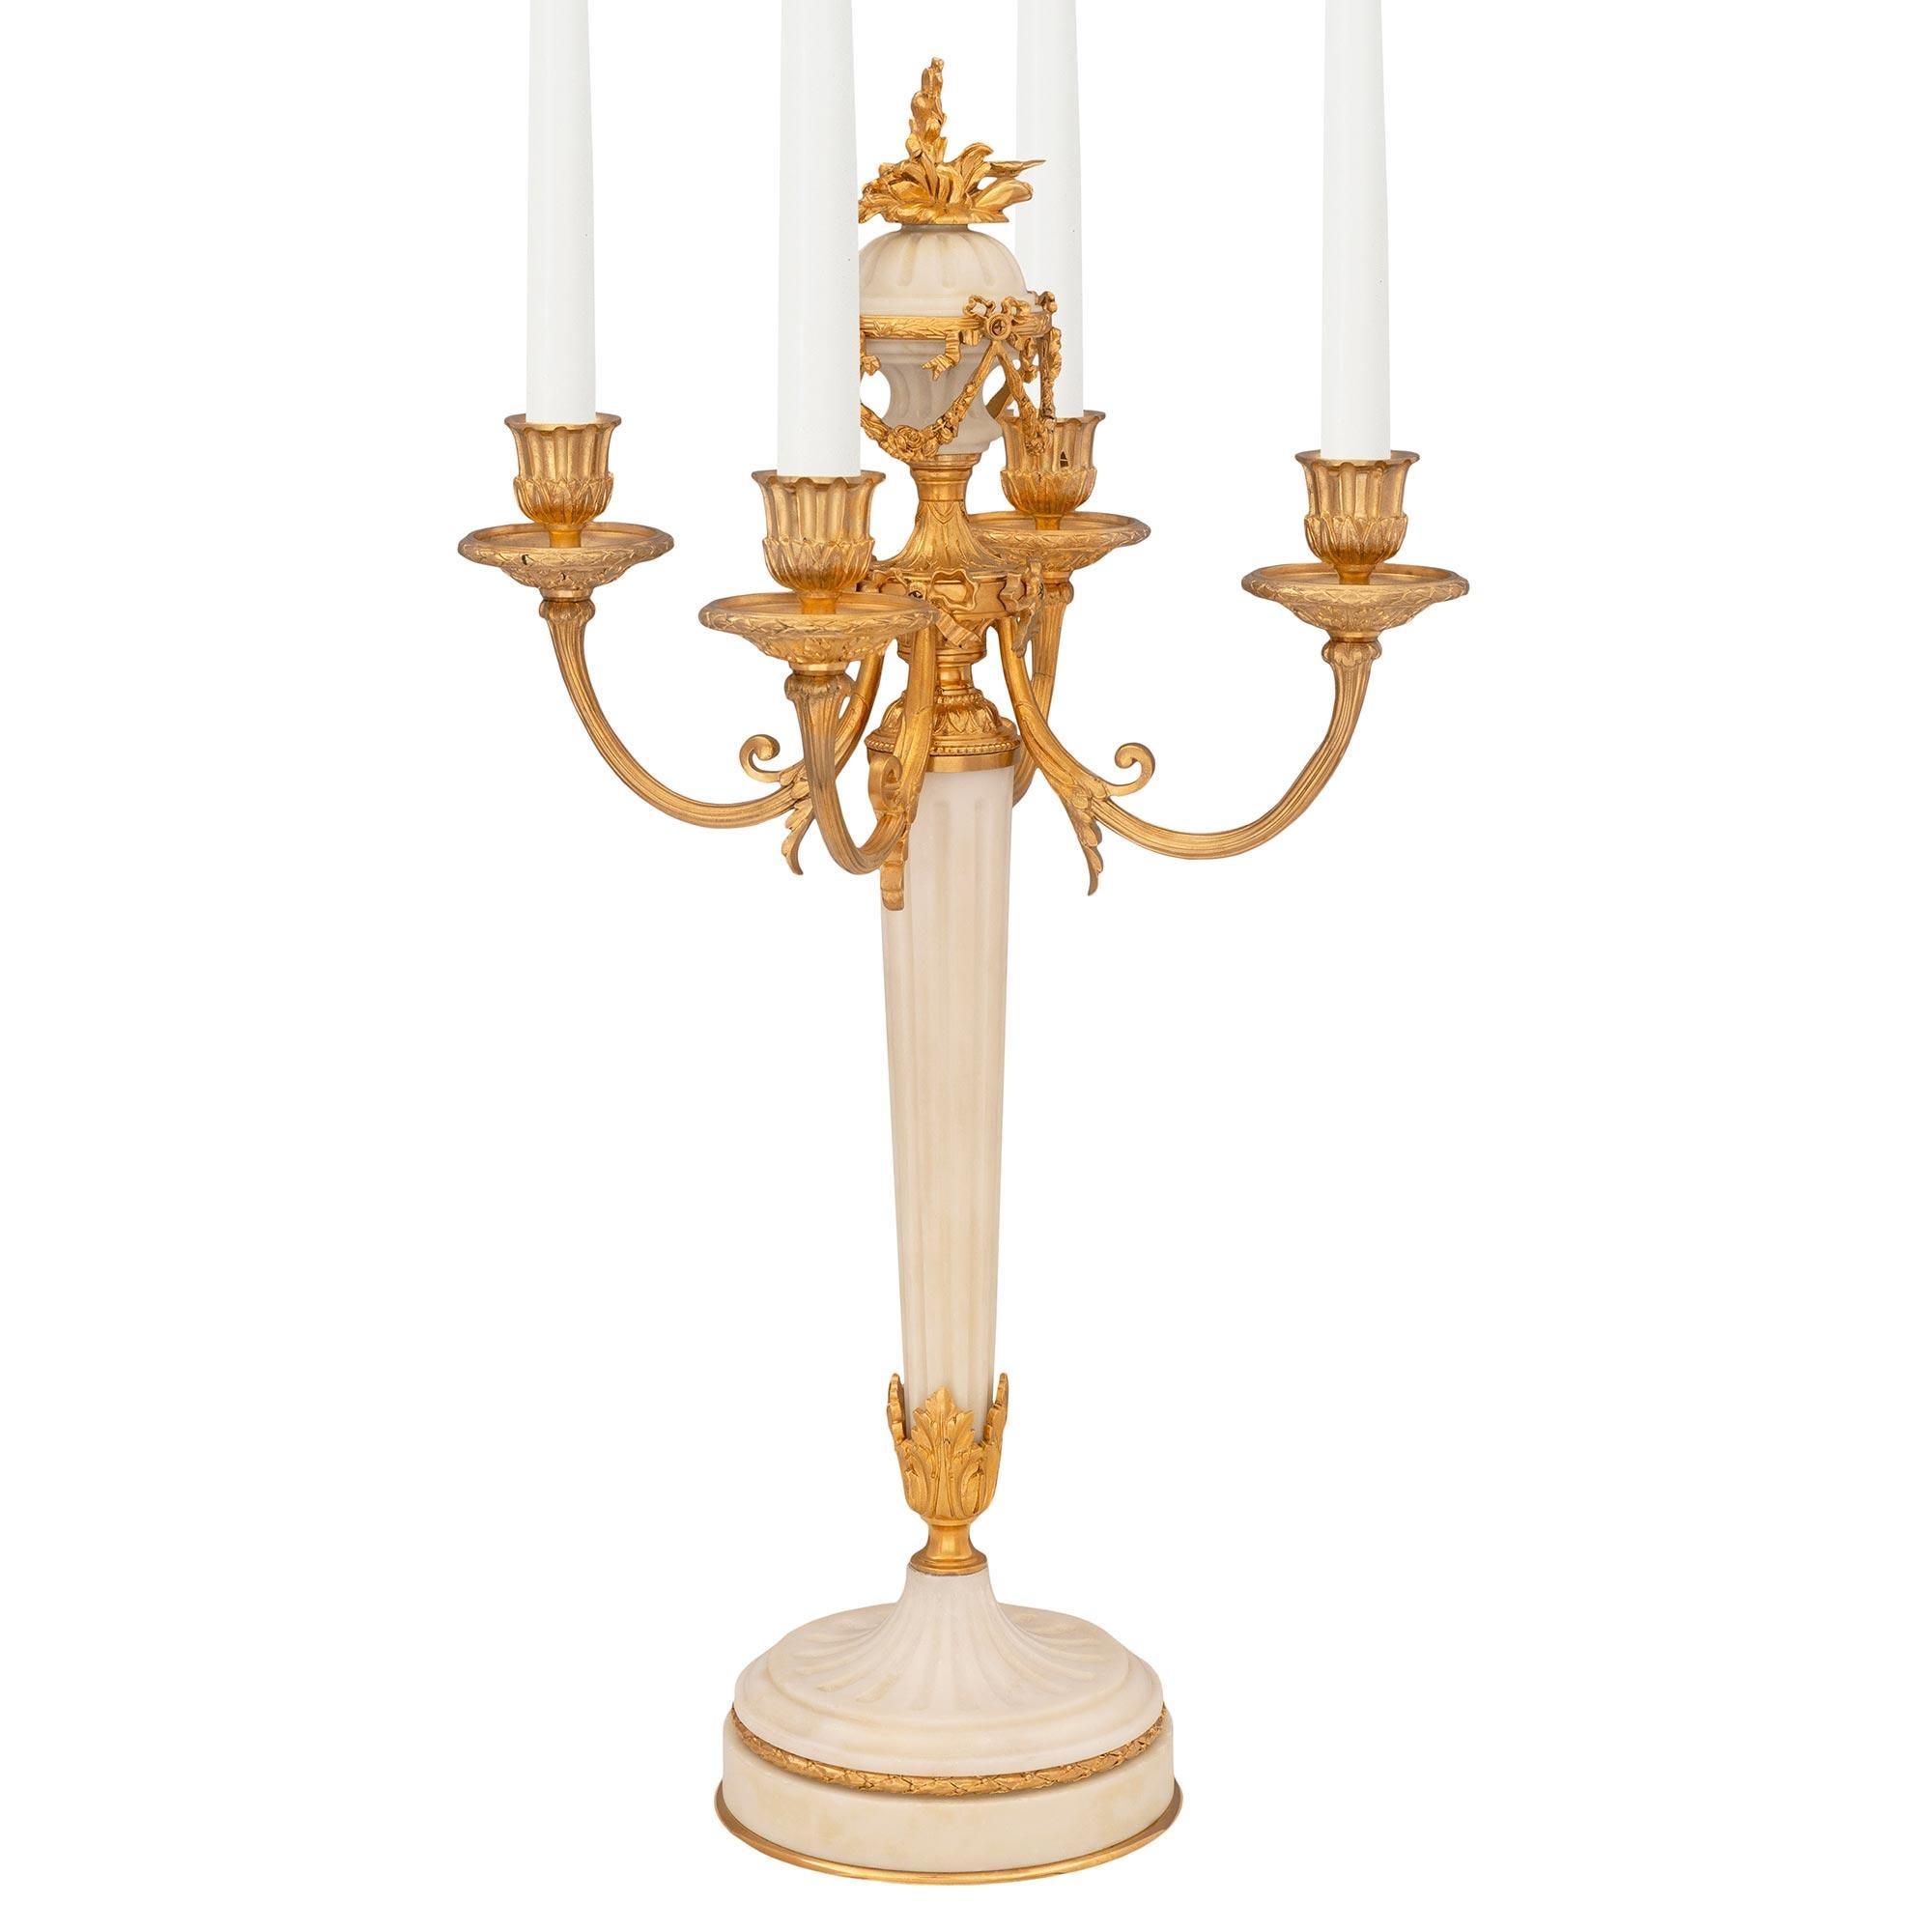 Une belle et extrêmement élégante paire de candélabres français du XIXe siècle, de style Louis XVI, en bronze doré et marbre de Carrare blanc. Chaque candélabre unique à quatre bras est surélevé par une base circulaire en marbre blanc de Carrare